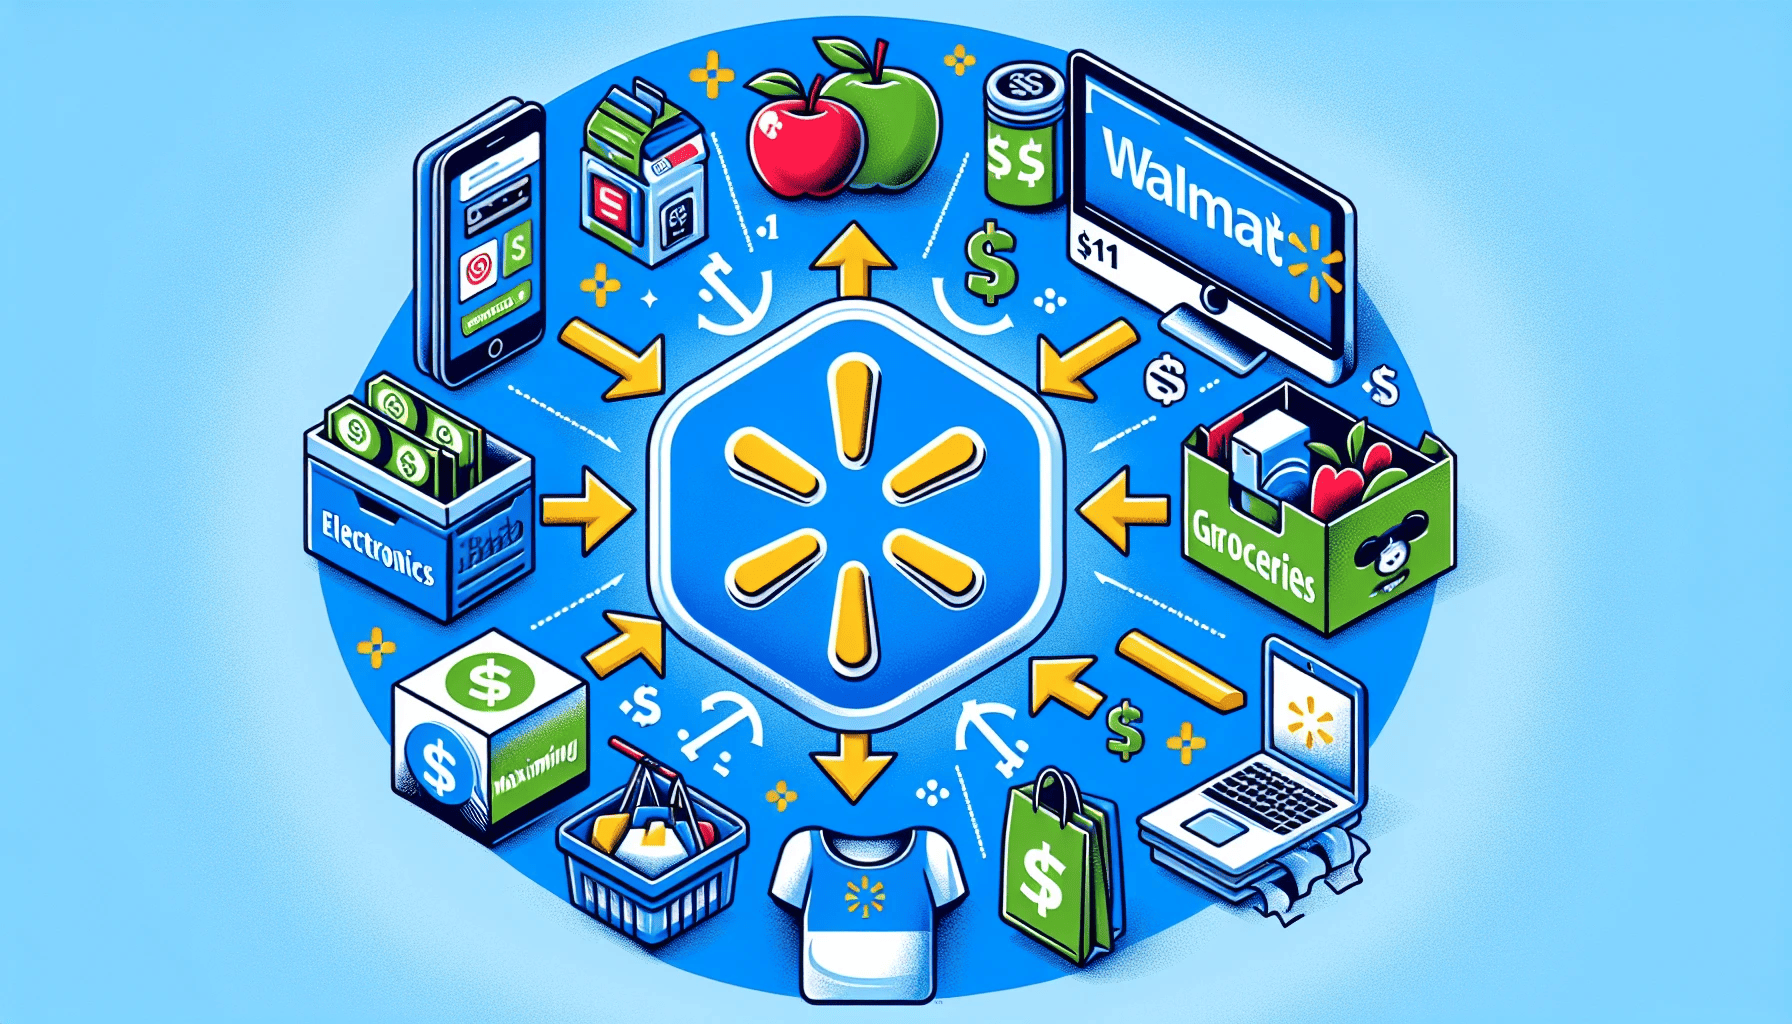 Illustration of targeting popular categories for Walmart affiliate program